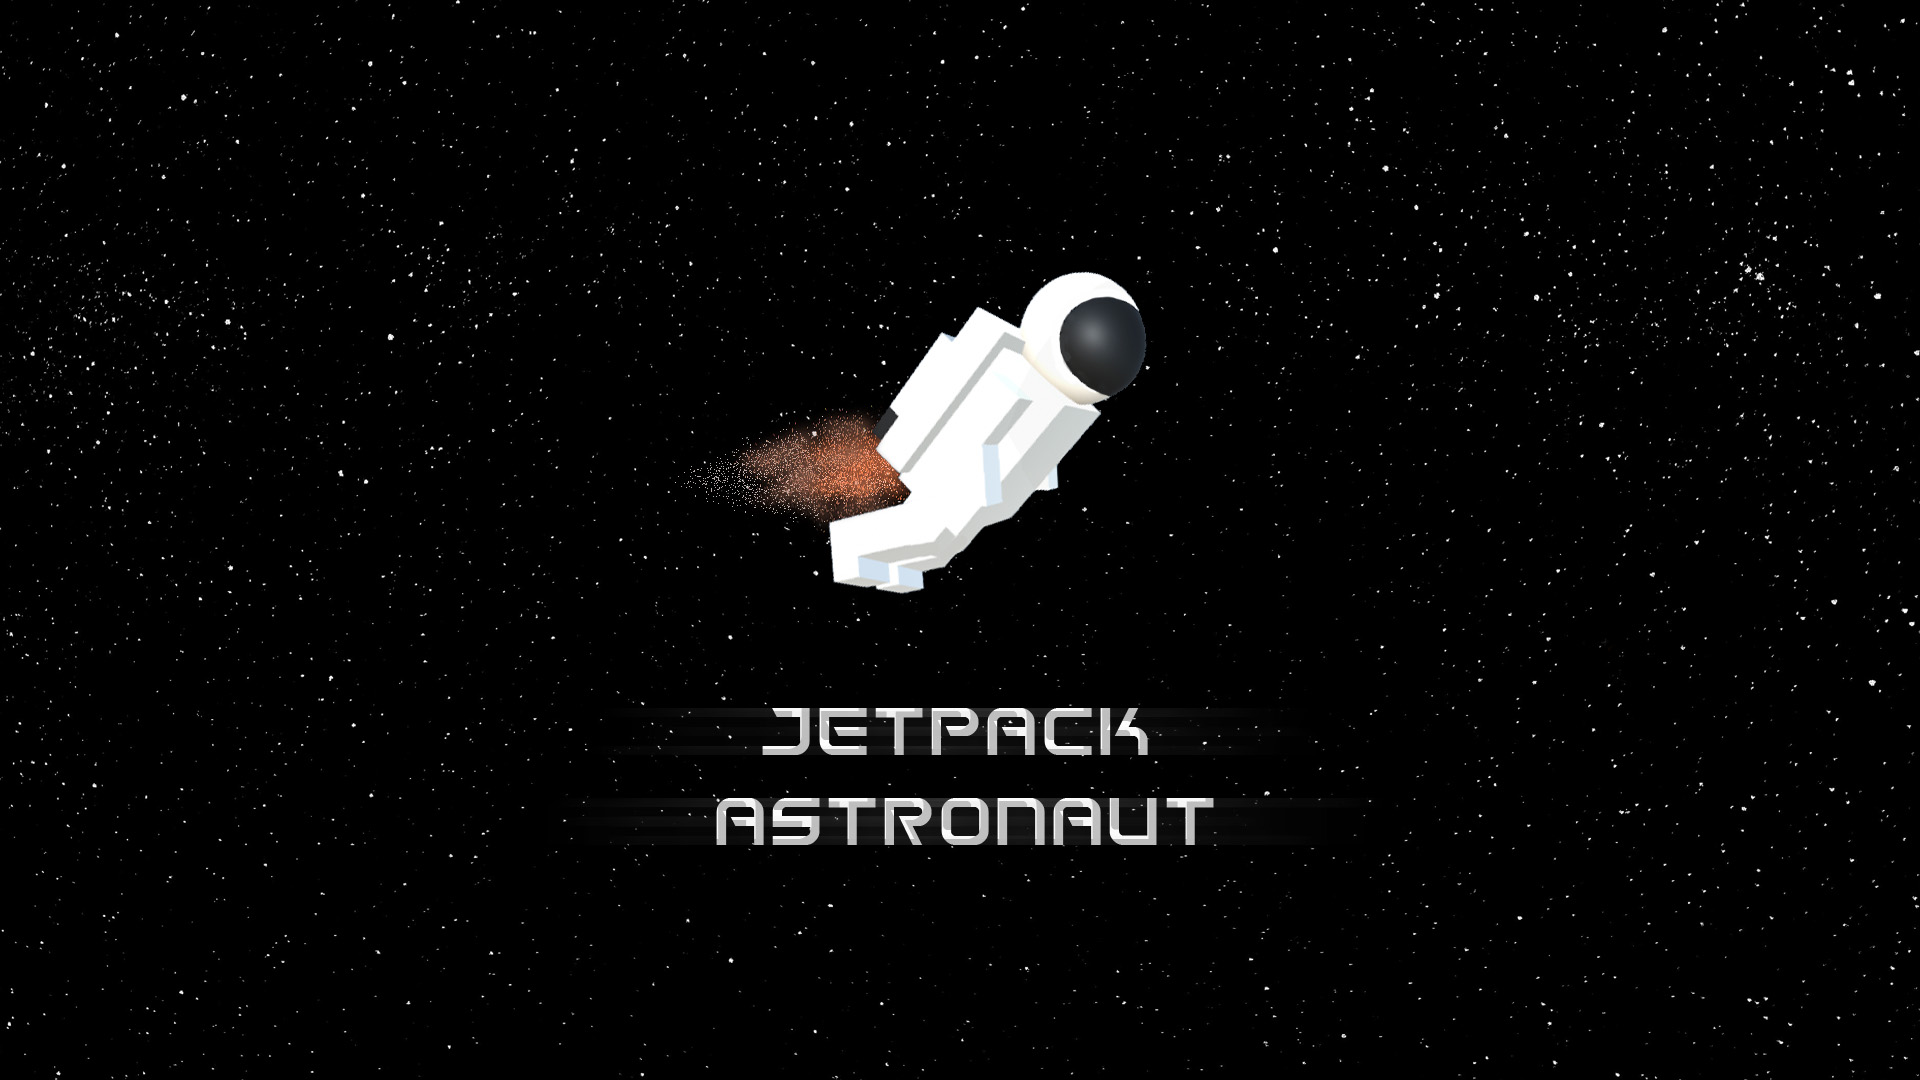 Jetpack Astronaut